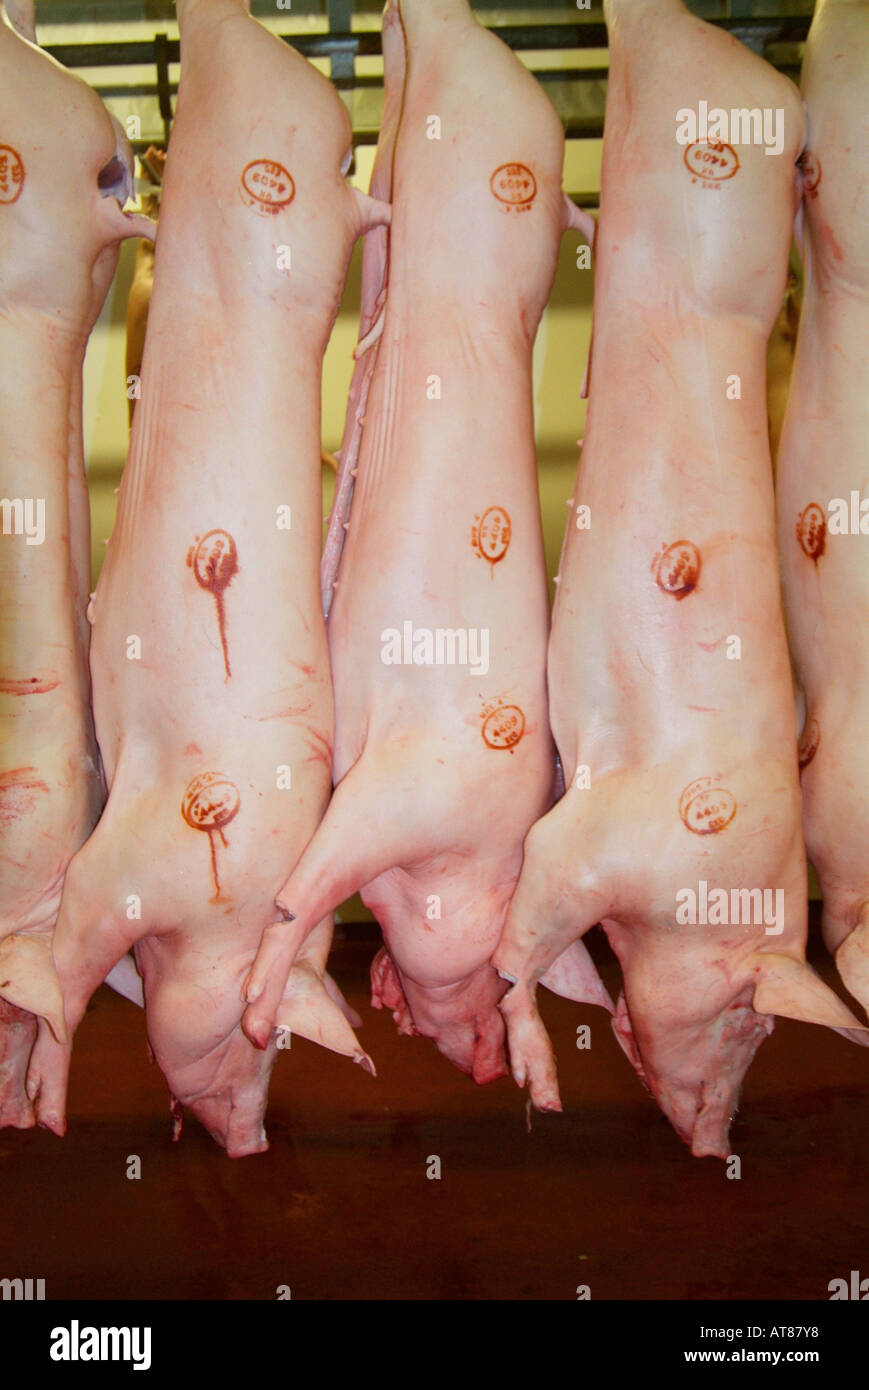 Pork pig bovine Pink skin Abattoir carcasses skin bone flesh dead meat livestock bacon chiller side slaughter house carcass Stock Photo